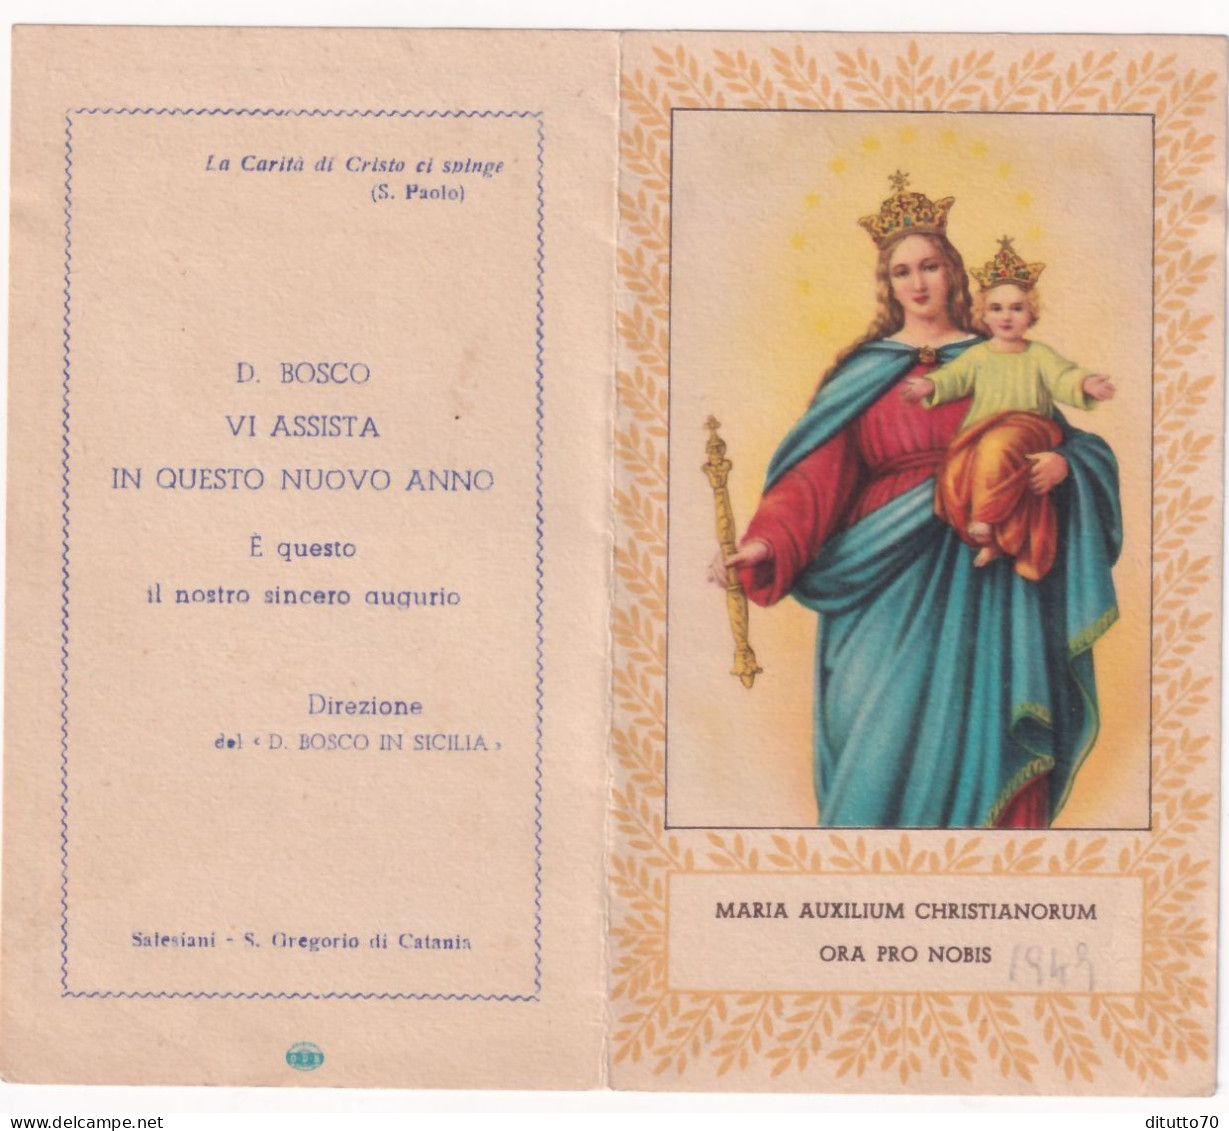 Calendarietto - Salesiano - Direzione Del D.bosco In Sicilia - Anno 1949 - Petit Format : 1941-60